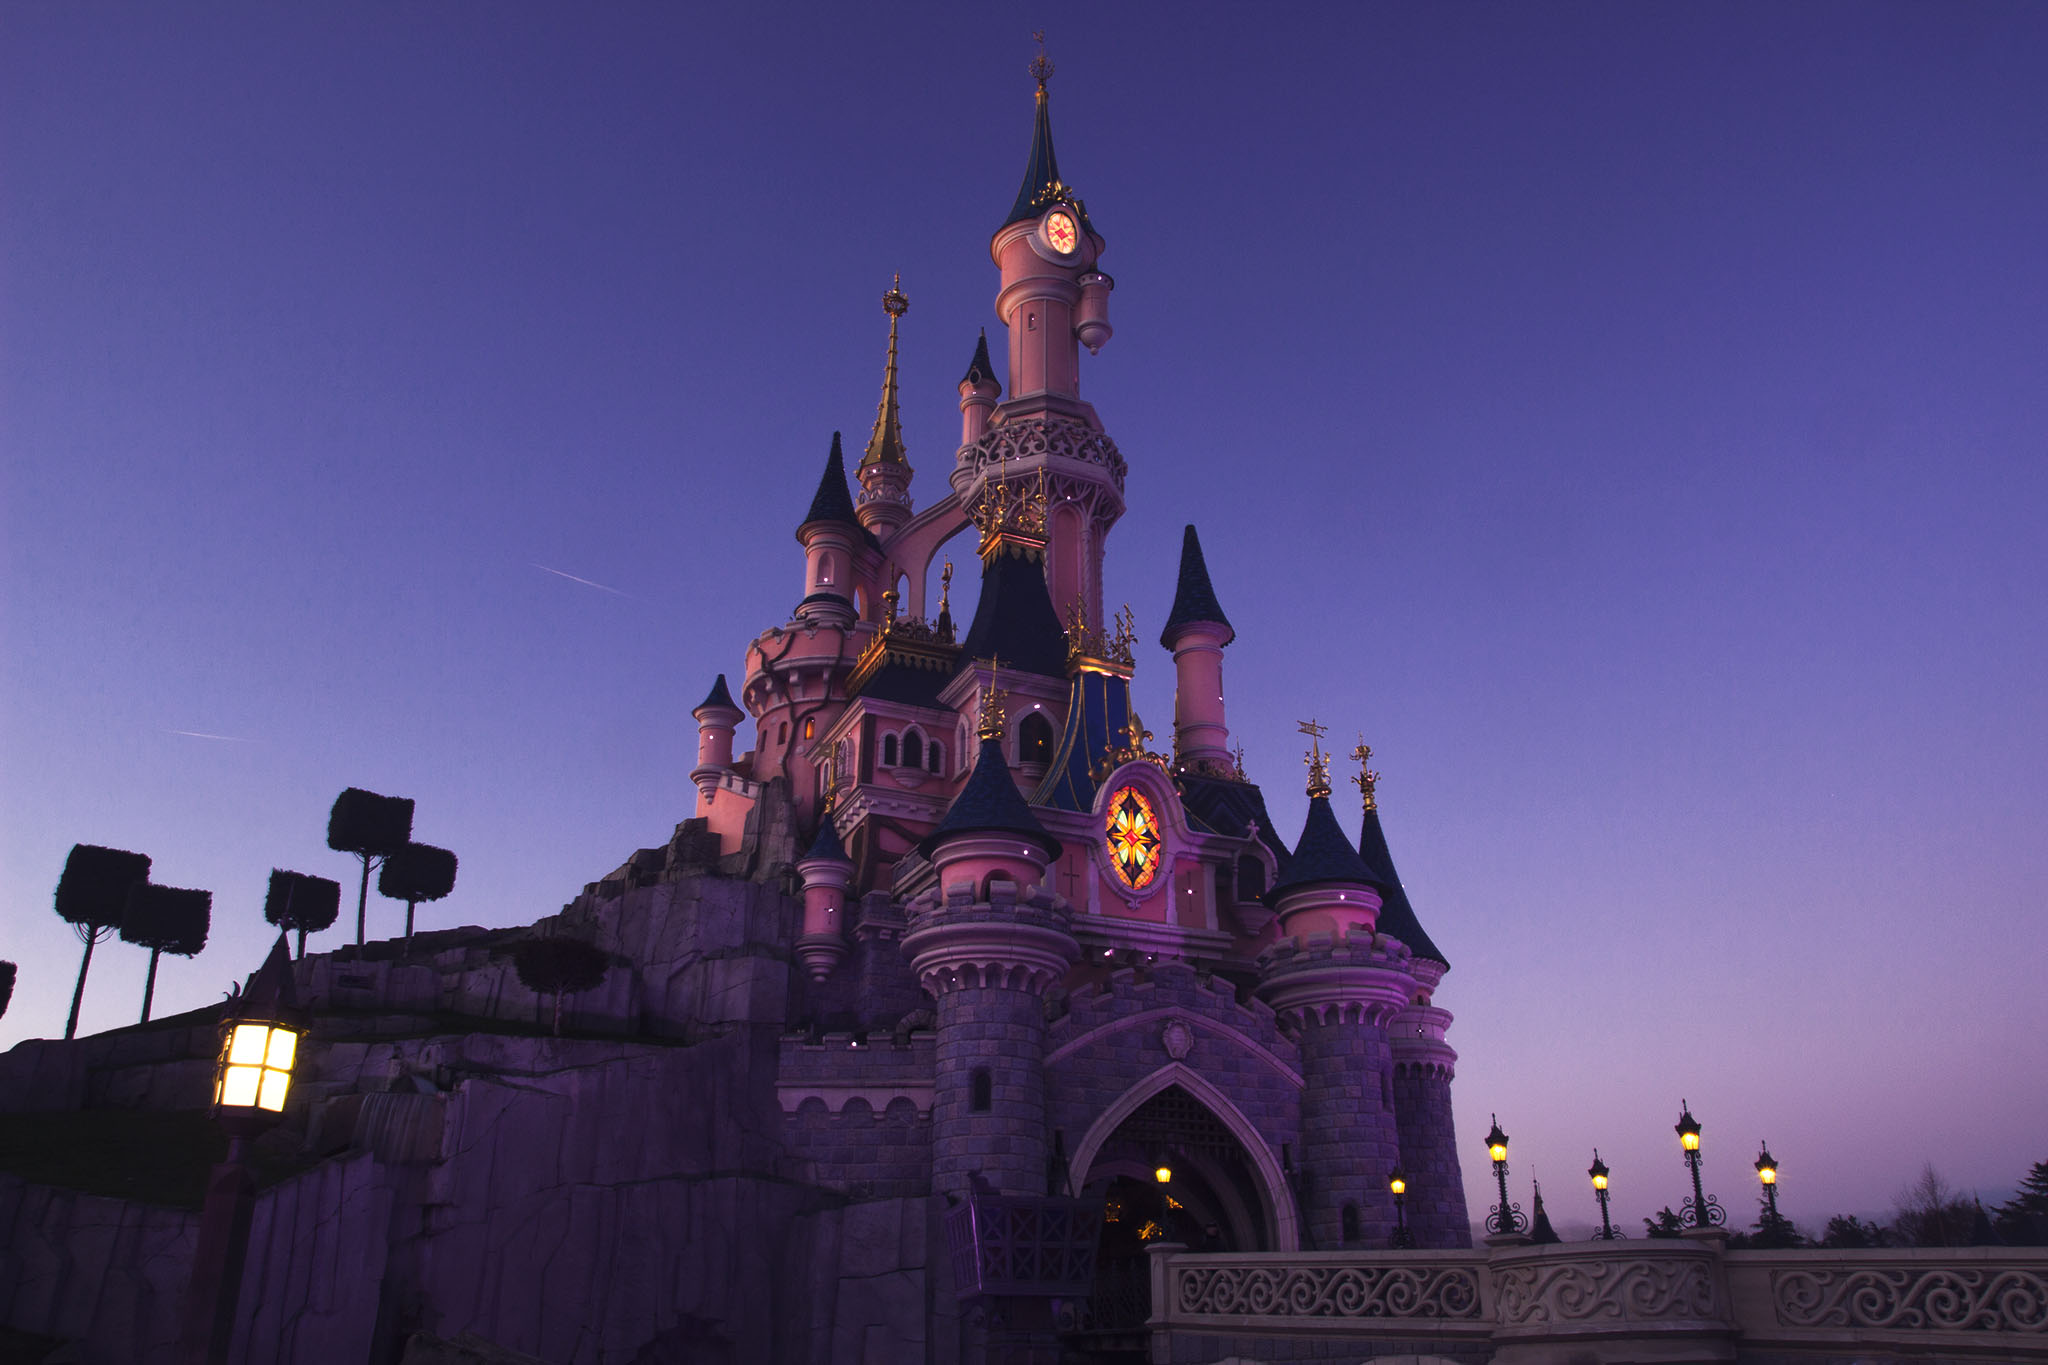 À Disneyland Paris : le château de la Belle au bois dormant